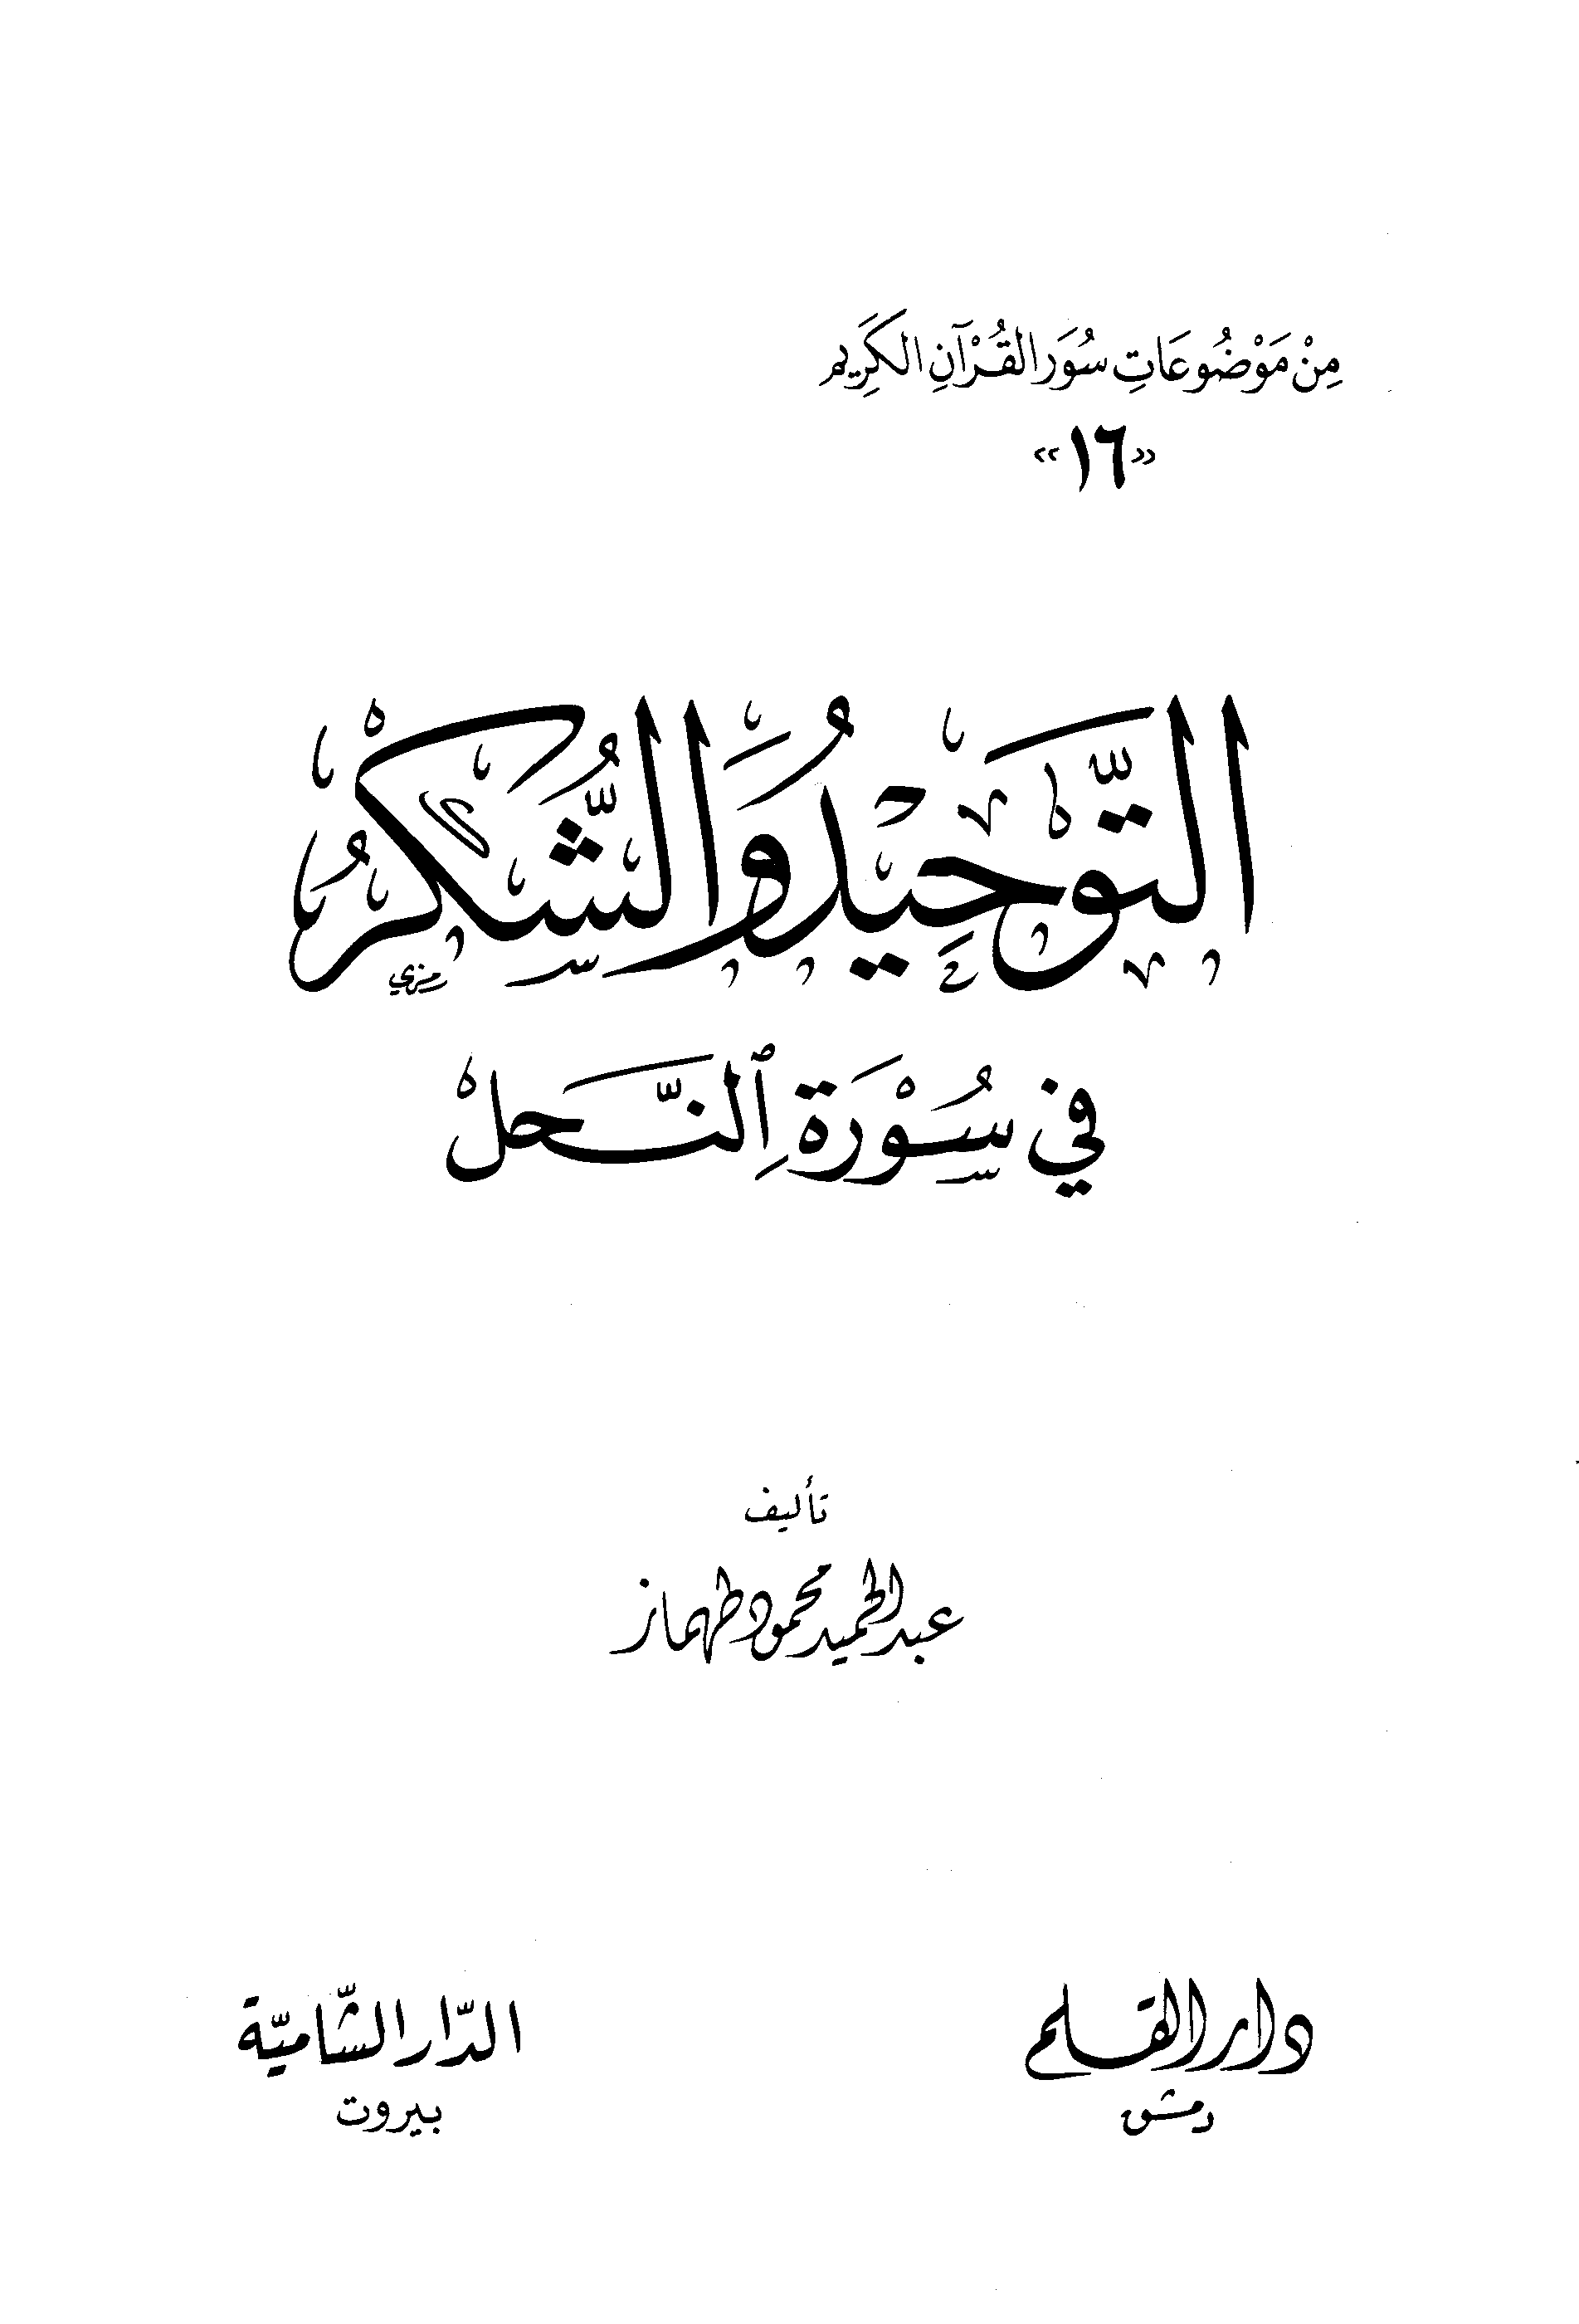 تحميل كتاب التوحيد والشكر في سورة النحل لـِ: الشيخ عبد الحميد بن محمود بن عبد القادر طهماز (ت 1431)